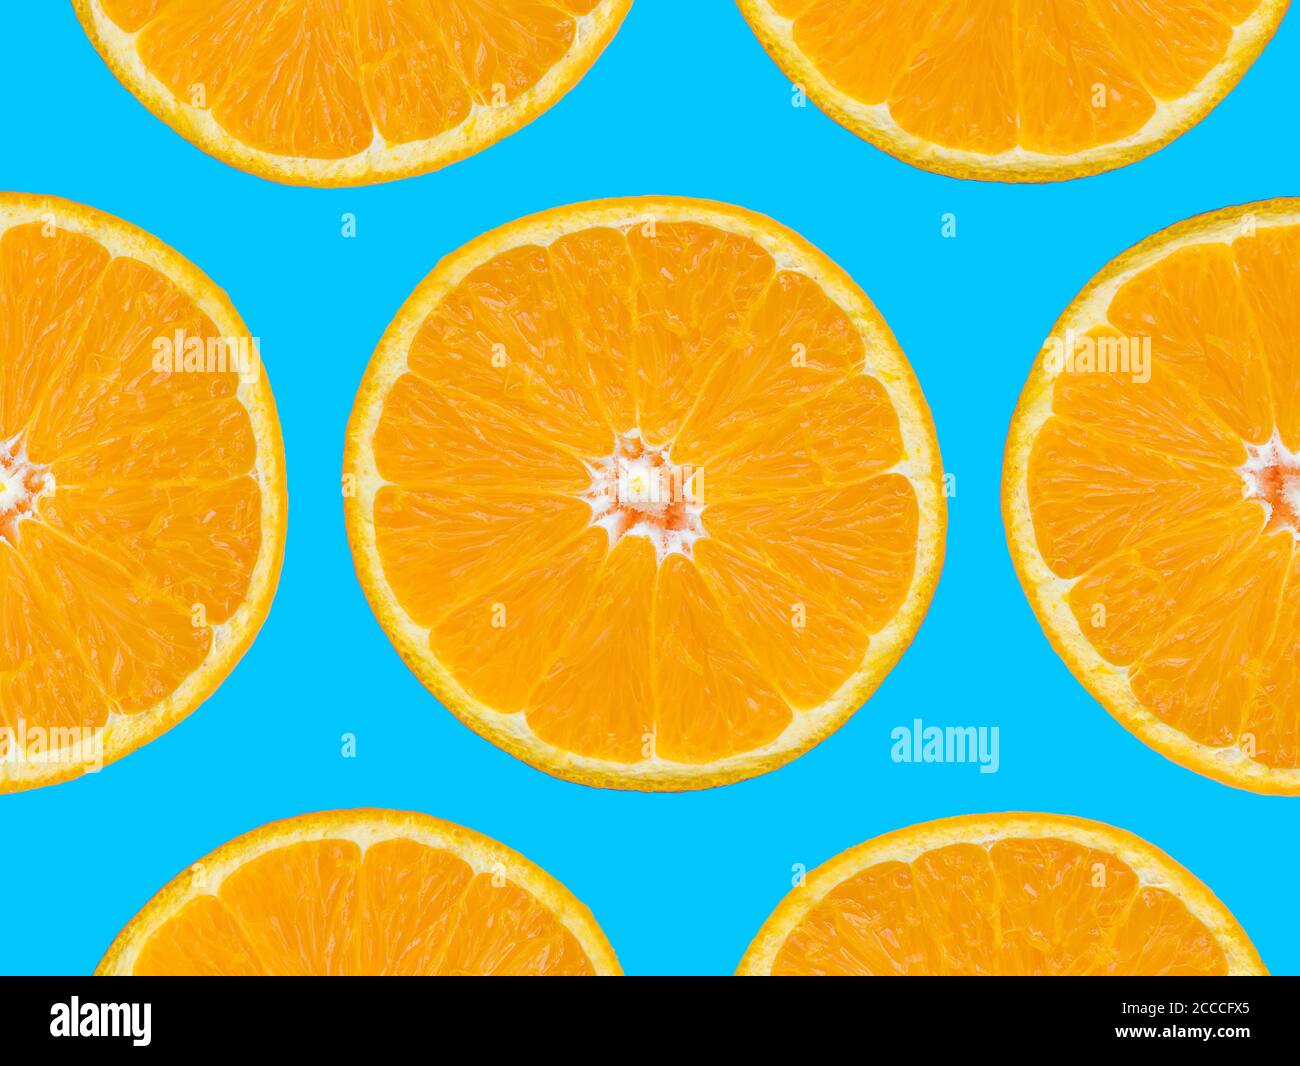 Motif de tranches orange sur fond bleu, style pop art Banque D'Images